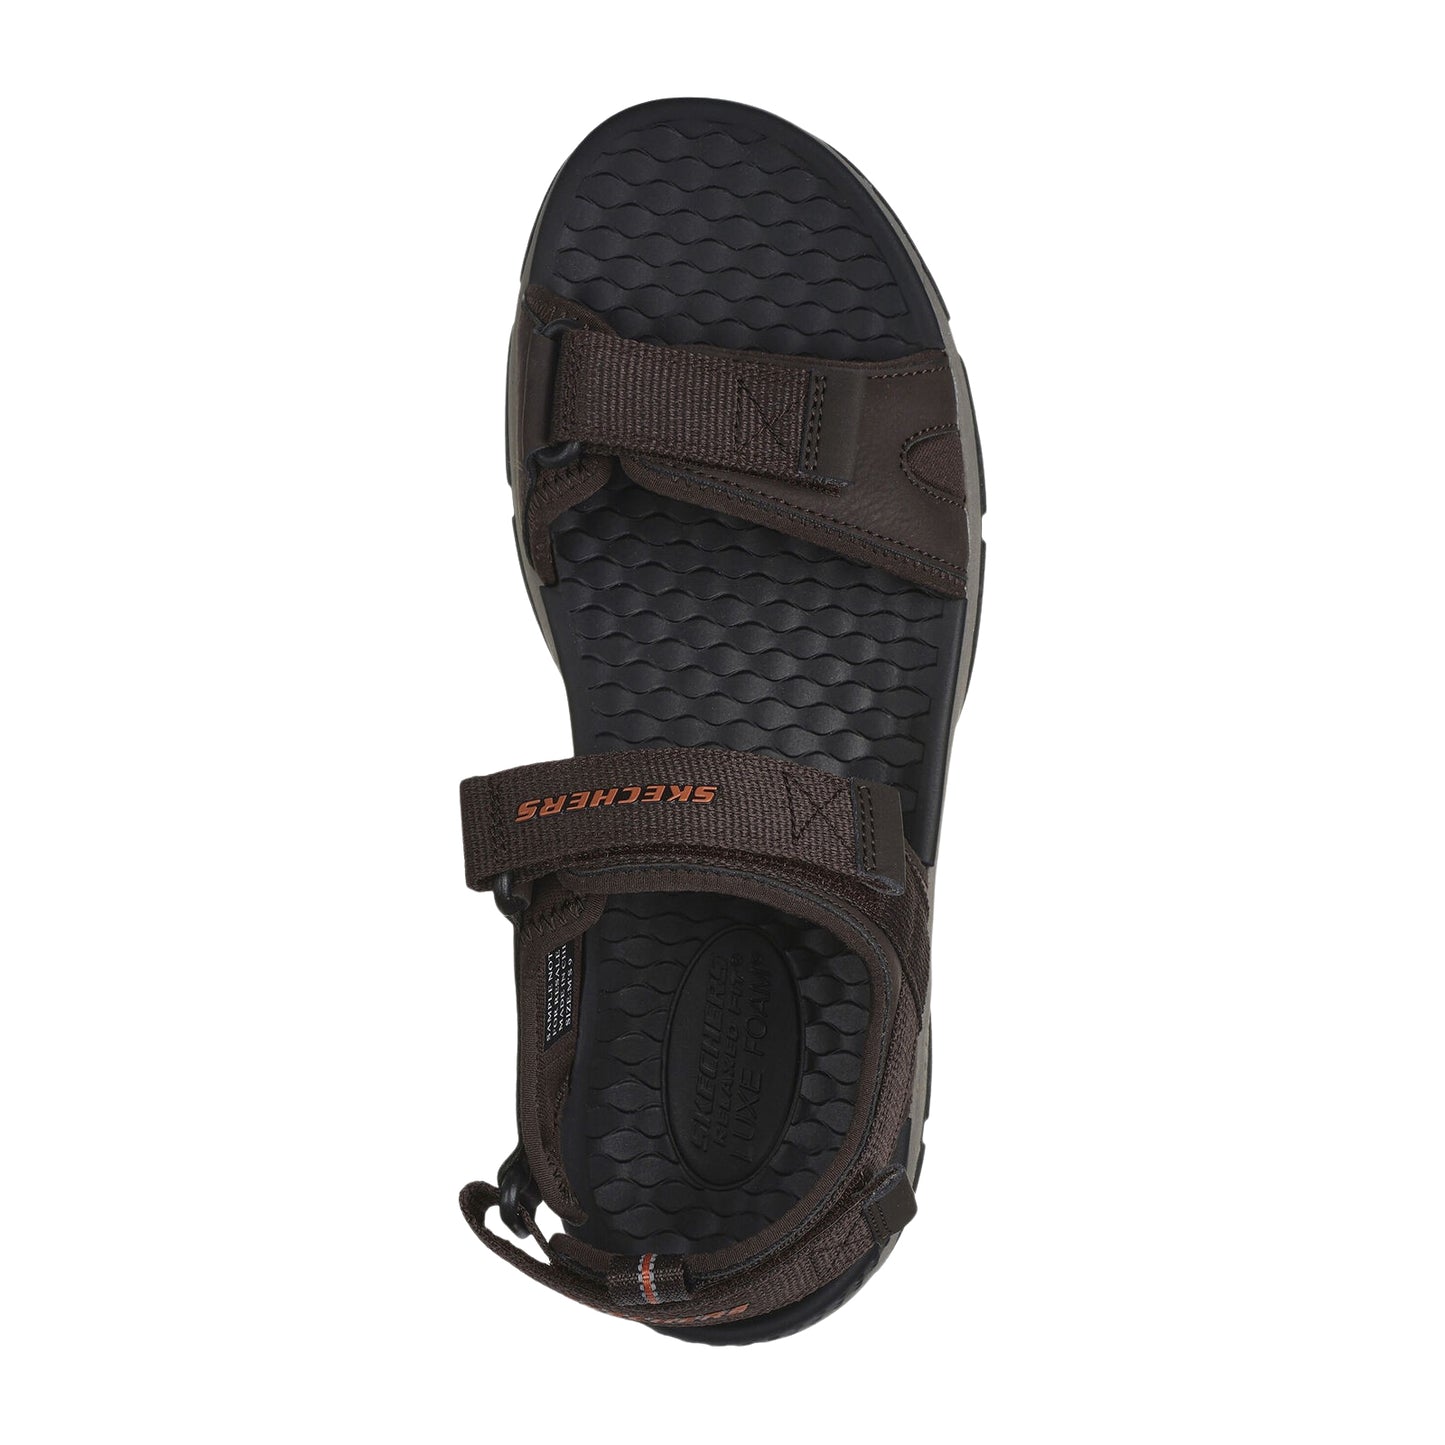 Skechers Mens Ryer Chocolate Brown Sports Walking Adjustable Vegan Sandal